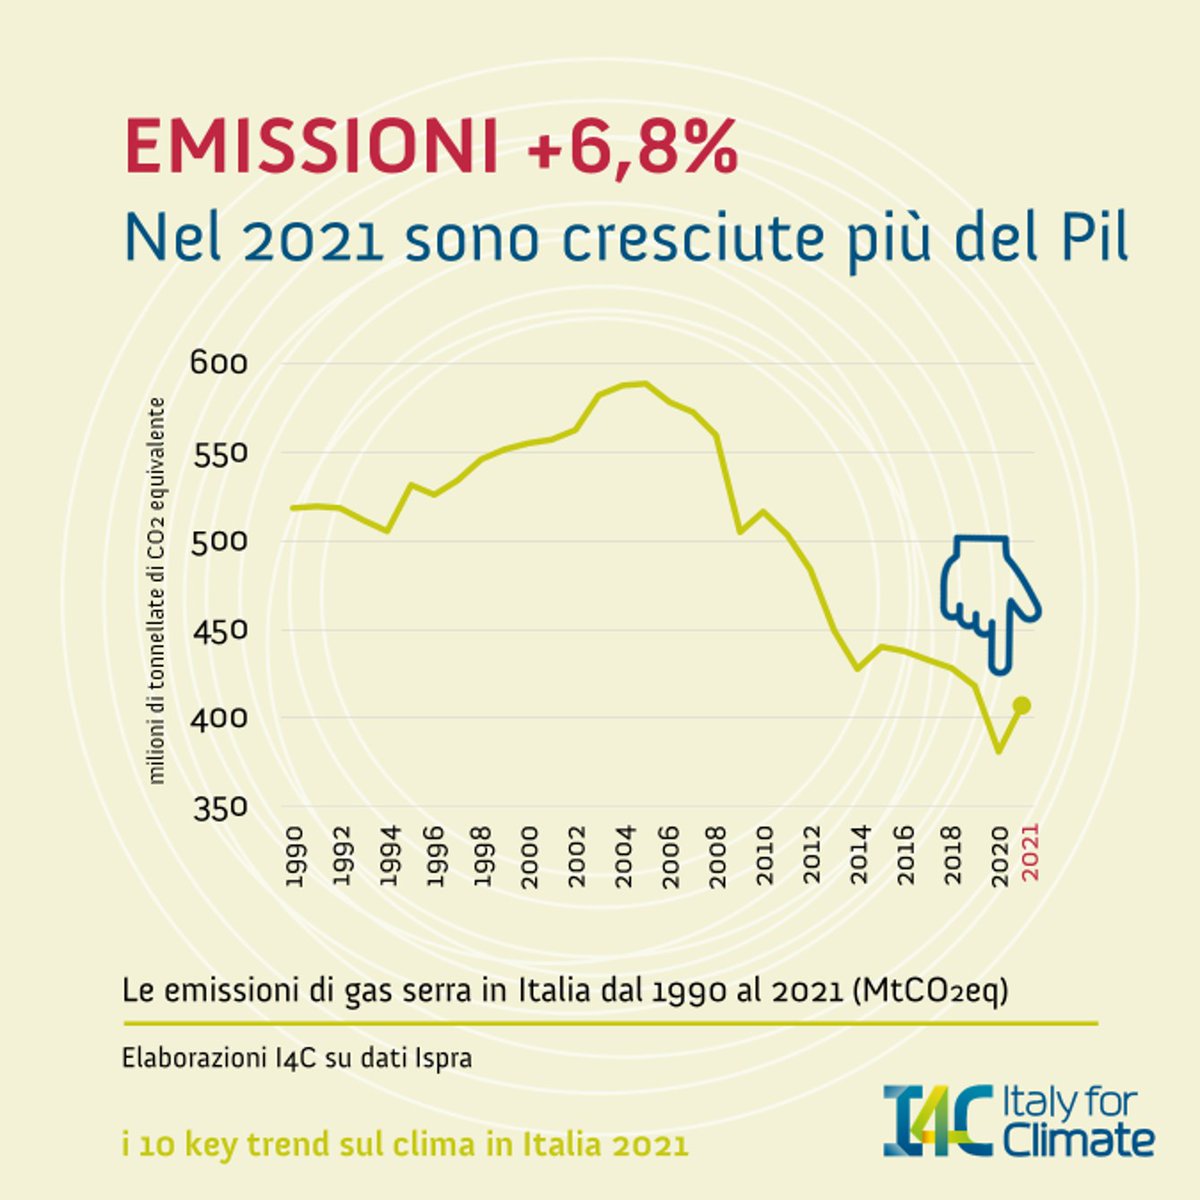 #EffettoRebound: nel 2021 #emissioni +6,8% in Italia, pari a 26 mln tonnellate di gas serra
📈Trend prevedibile a fronte della #ripresa post Covid, ma emissioni sono cresciute (di poco) più del Pil: anche in Italia nessuna #greenrecovery
Per approfondire👉italyforclimate.org/nel-2021-in-it…